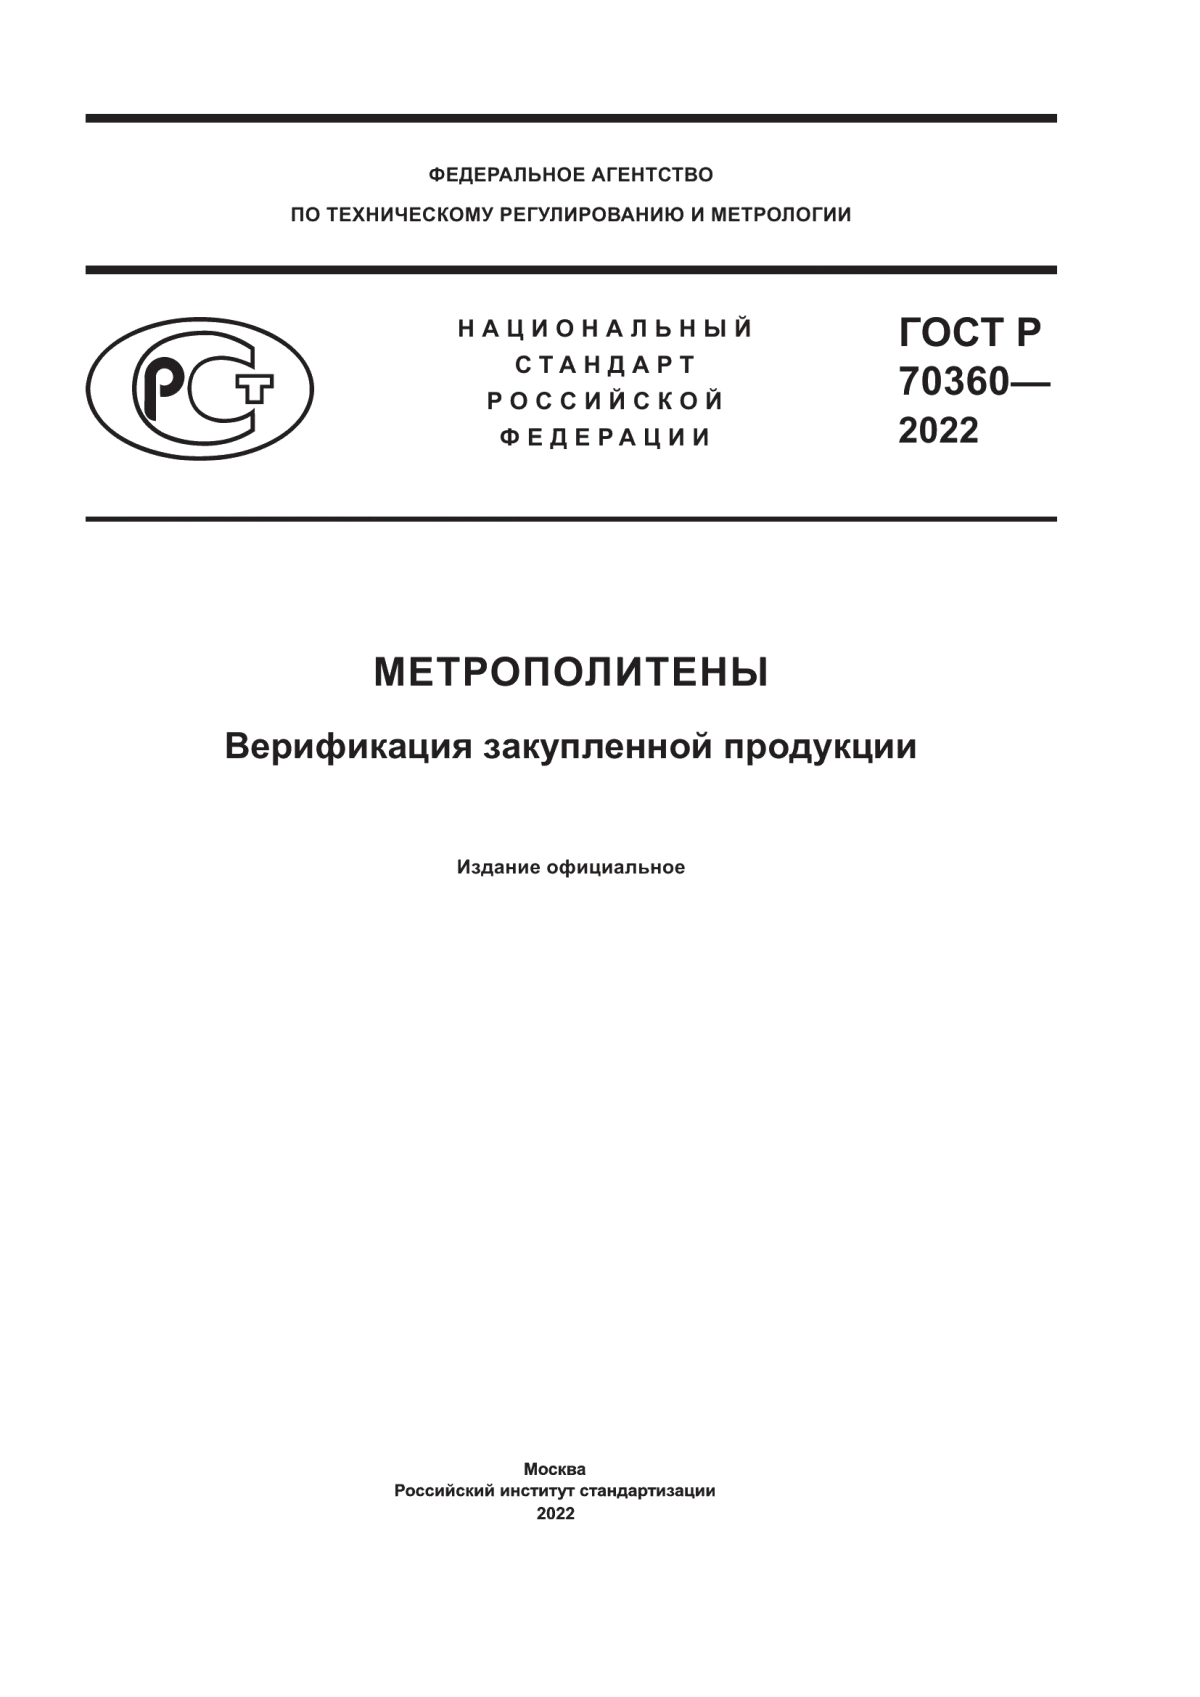 ГОСТ Р 70360-2022 Метрополитены. Верификация закупленной продукции